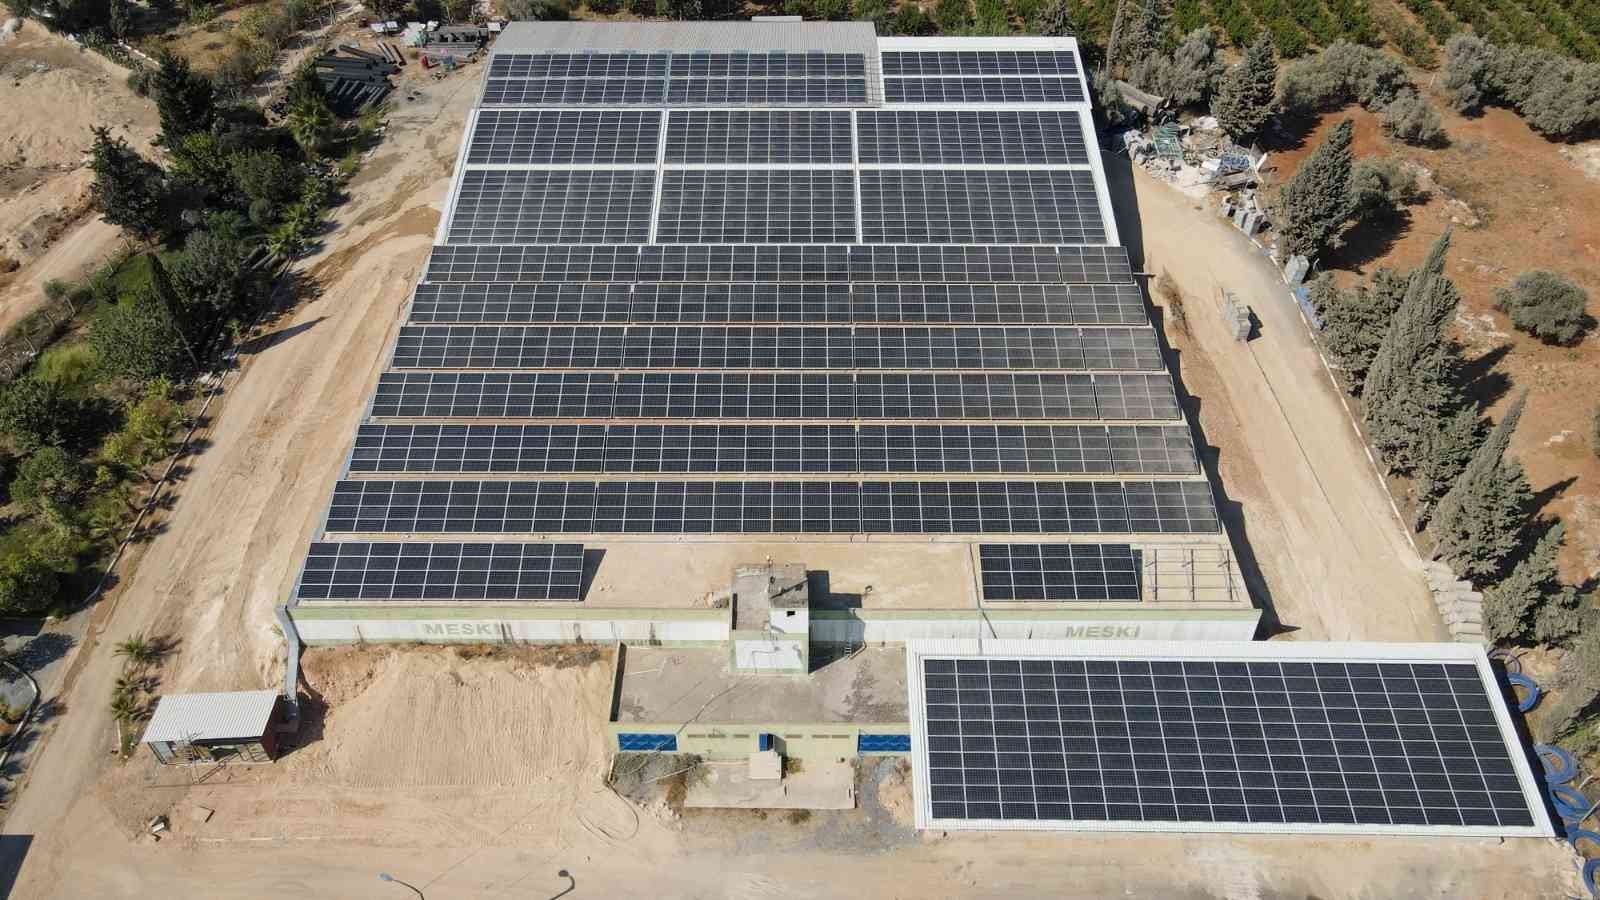 Mersin’de çatı tipi güneş enerji santralleri yaygınlaşıyor #mersin